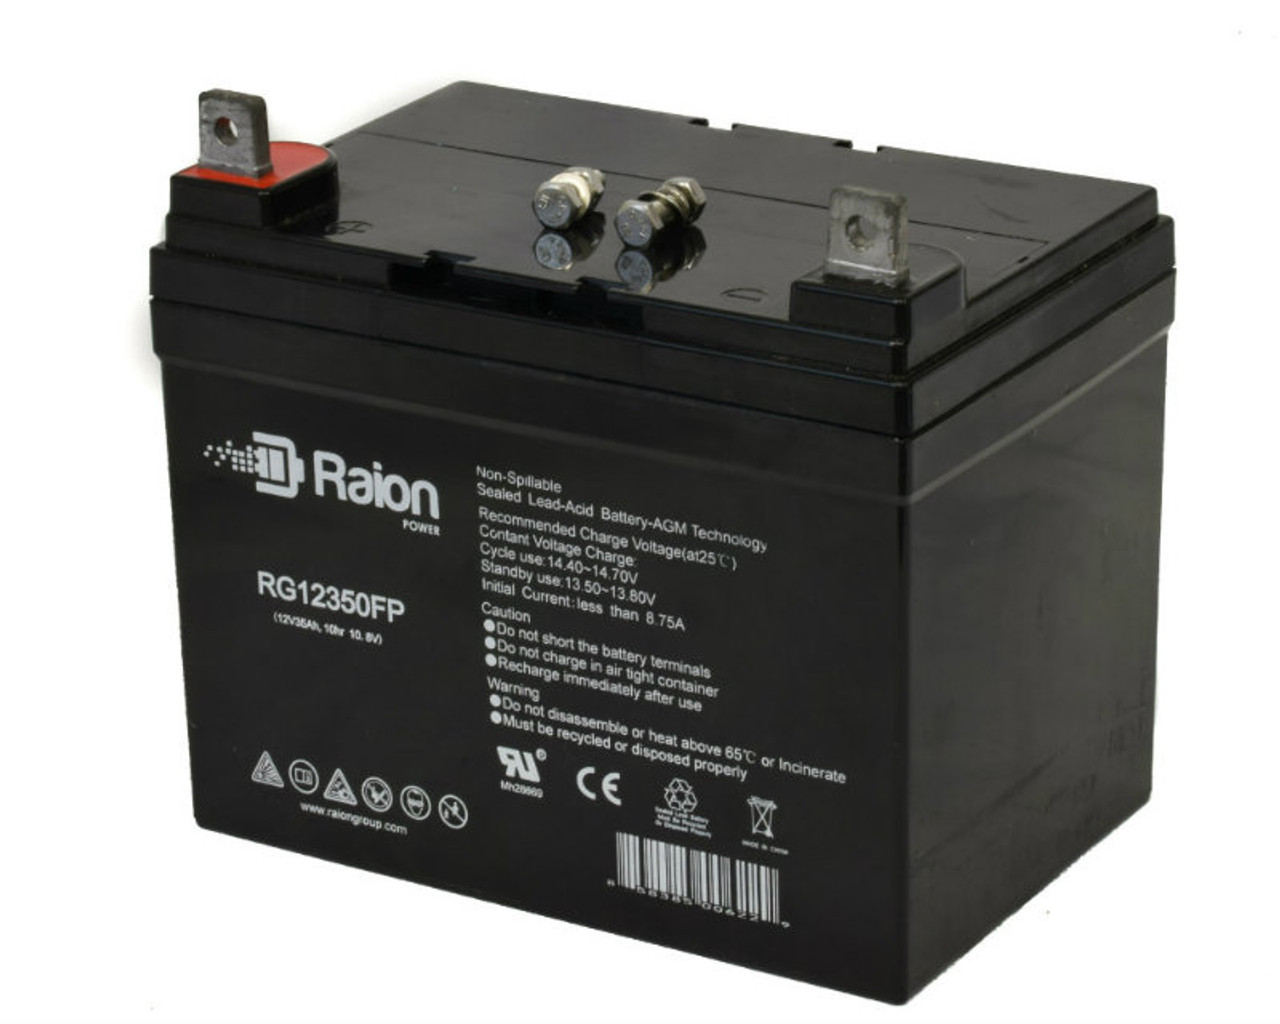 Raion Power Replacement 12V 35Ah RG12350FP Battery for John Deere LT155